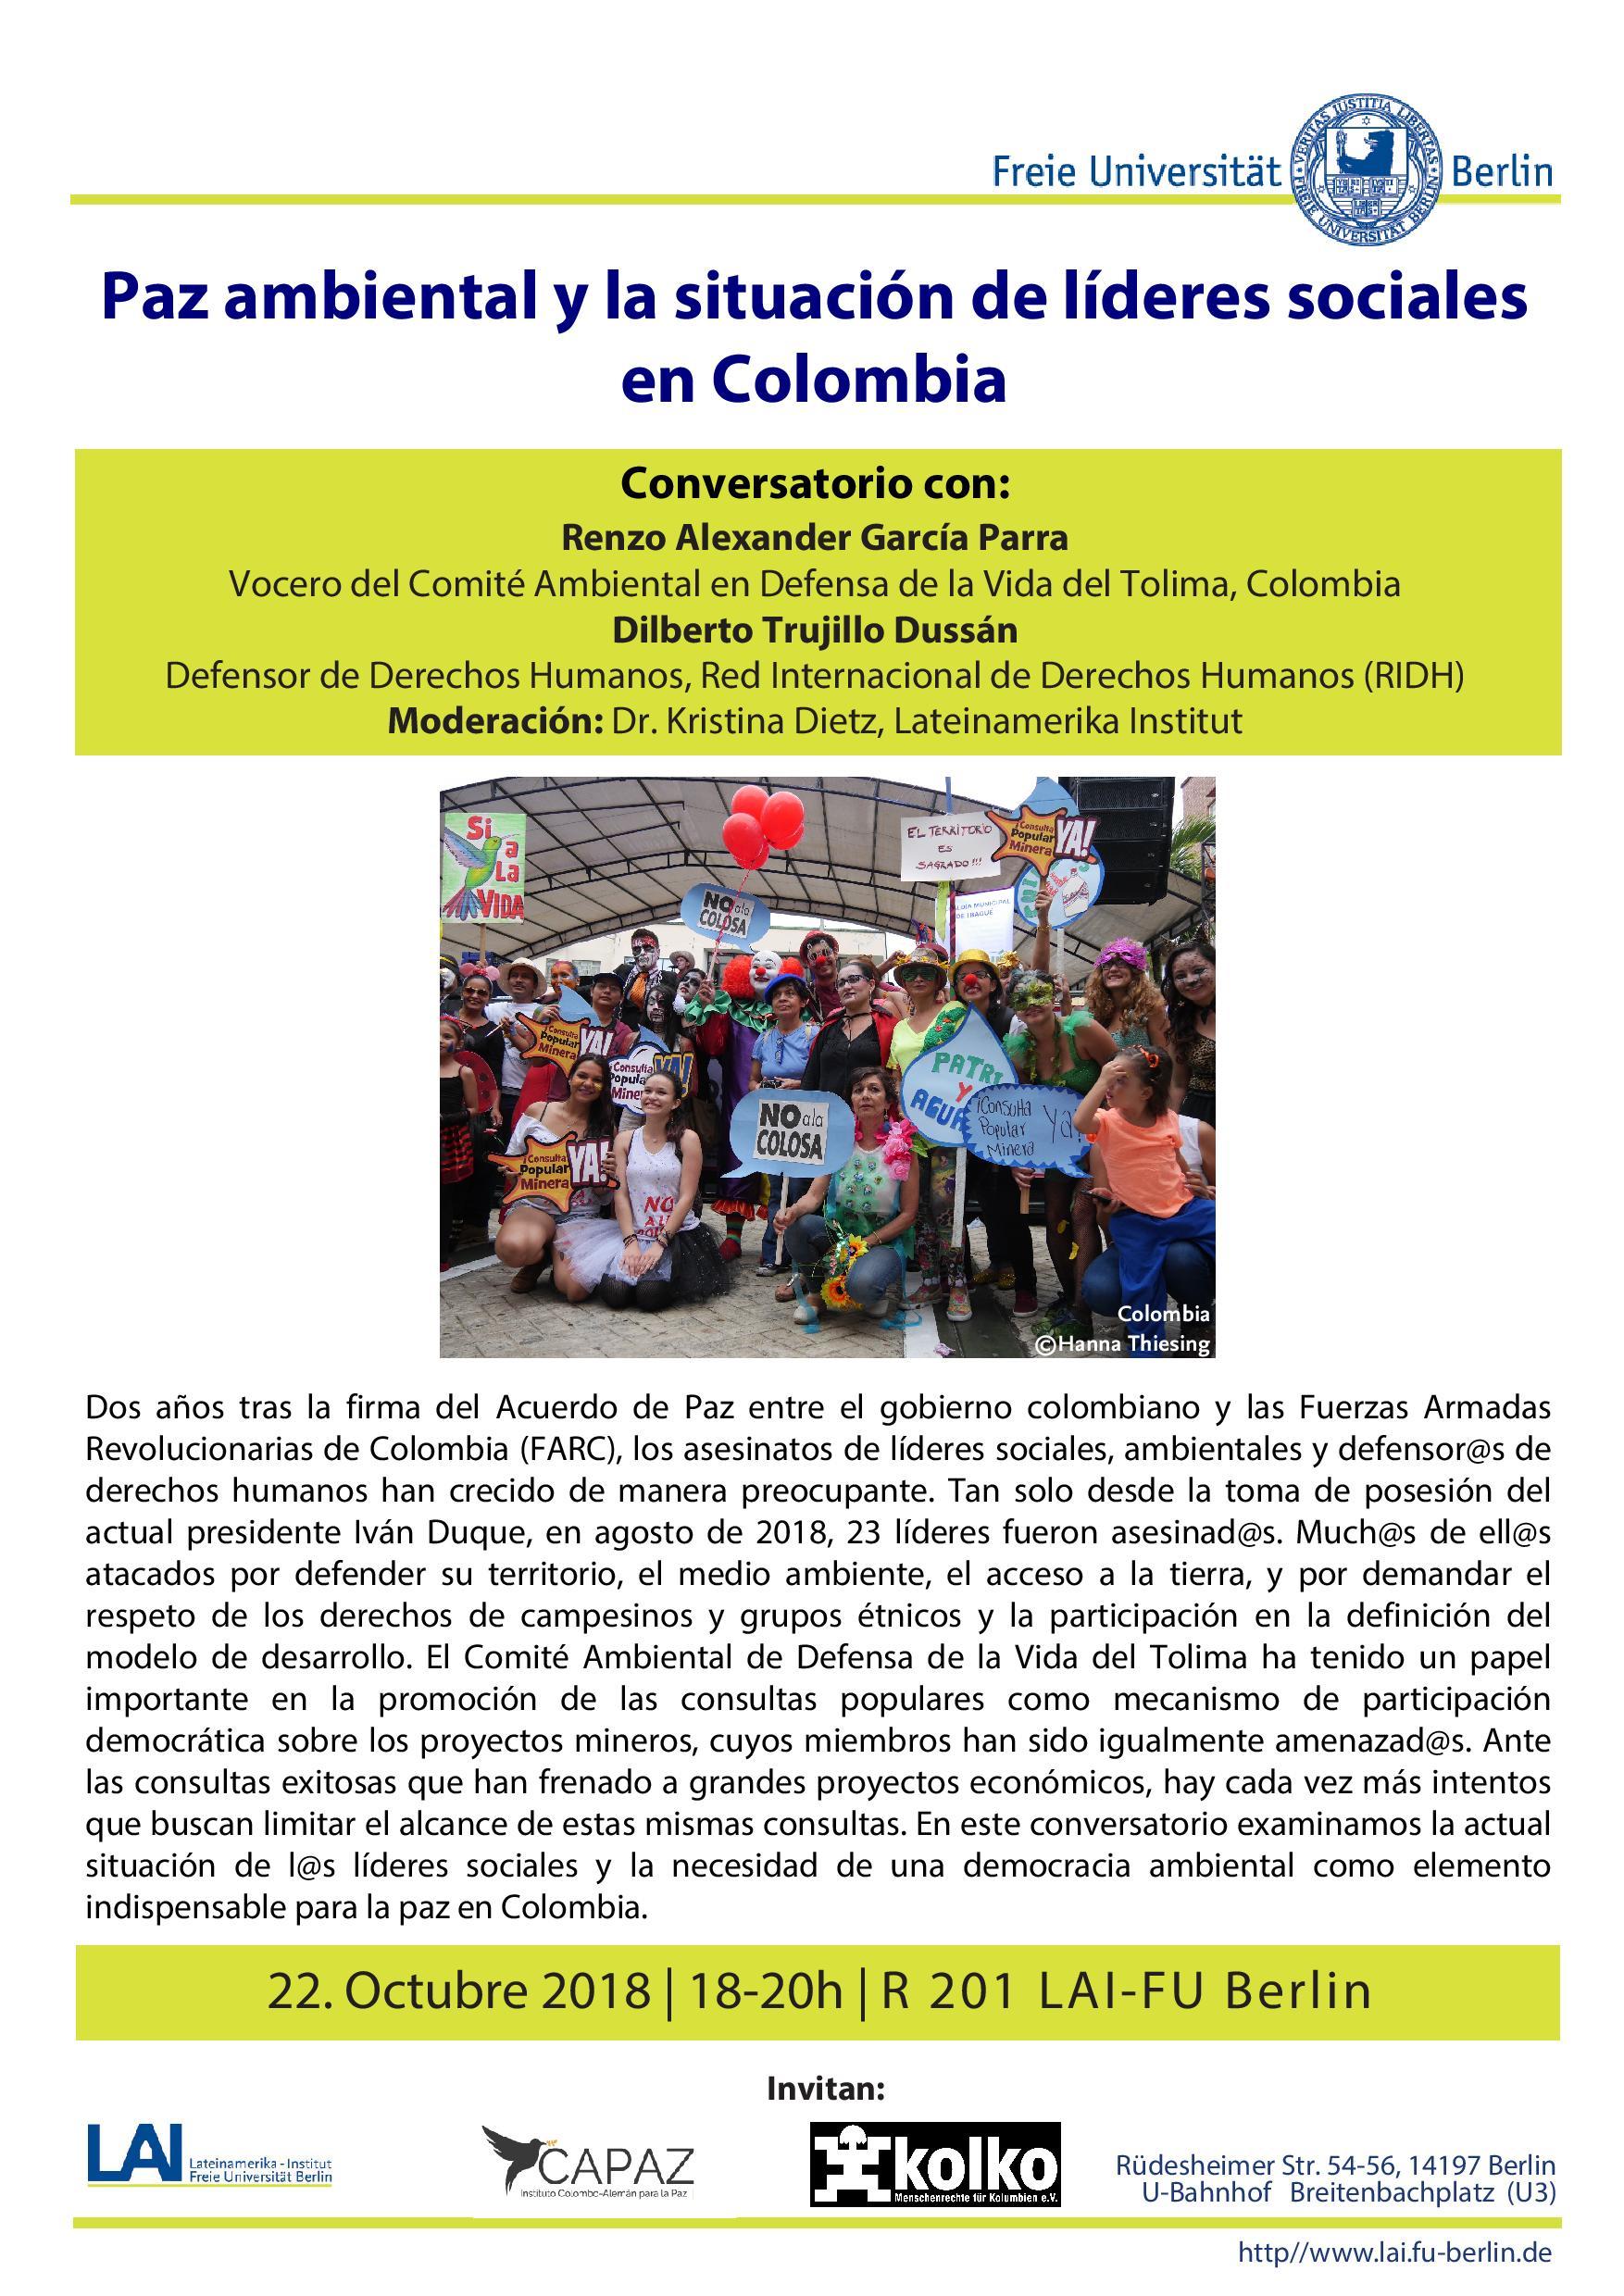 JPG Flyer_Paz ambiental y la situación de líderes sociales en Colombia-page-001